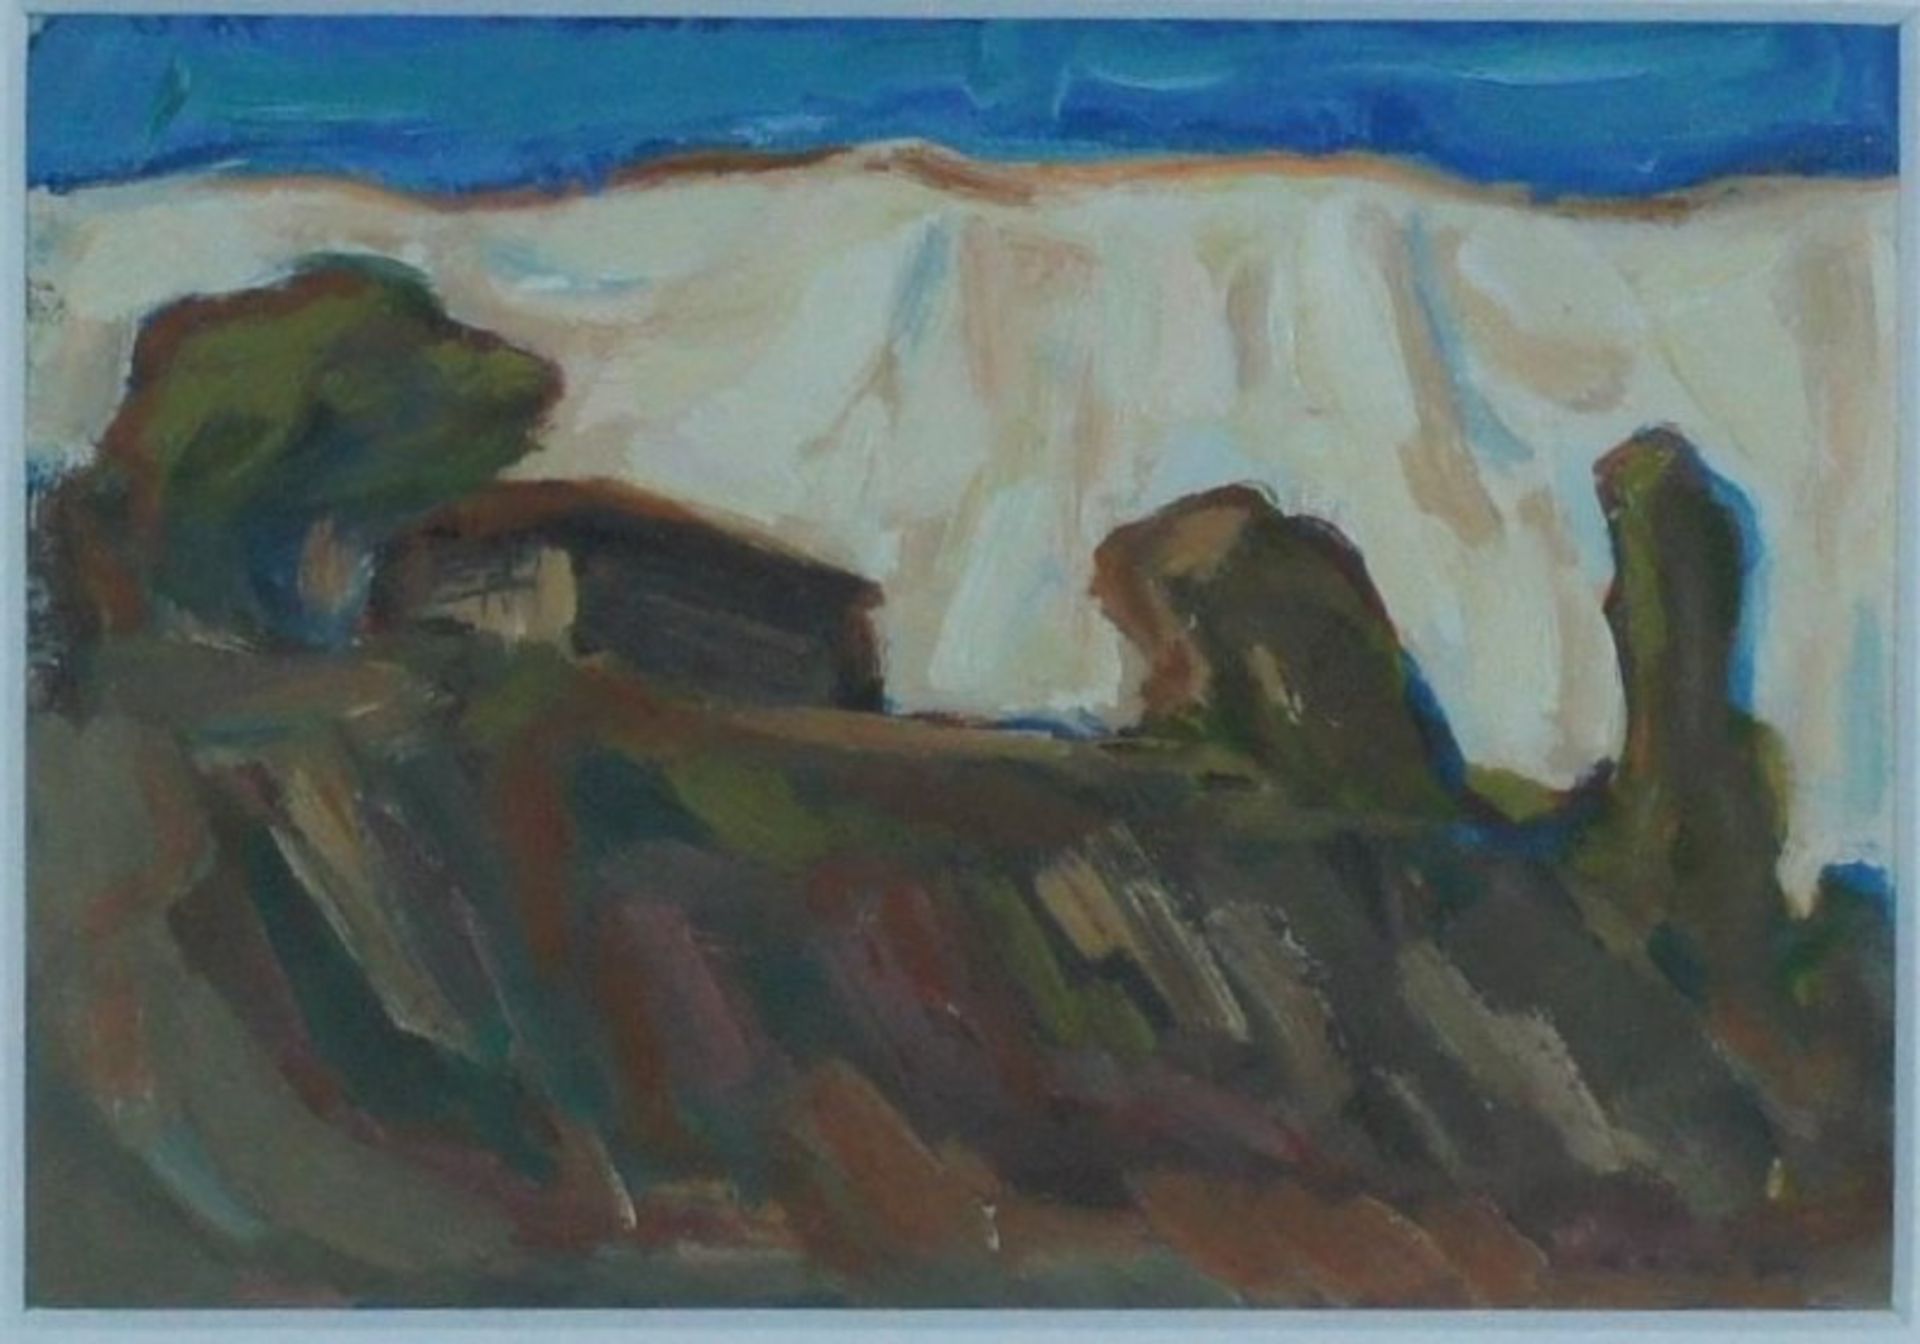 Ruth Klatte, Landschaft, 1974, sign. Mischt., 11 x 1